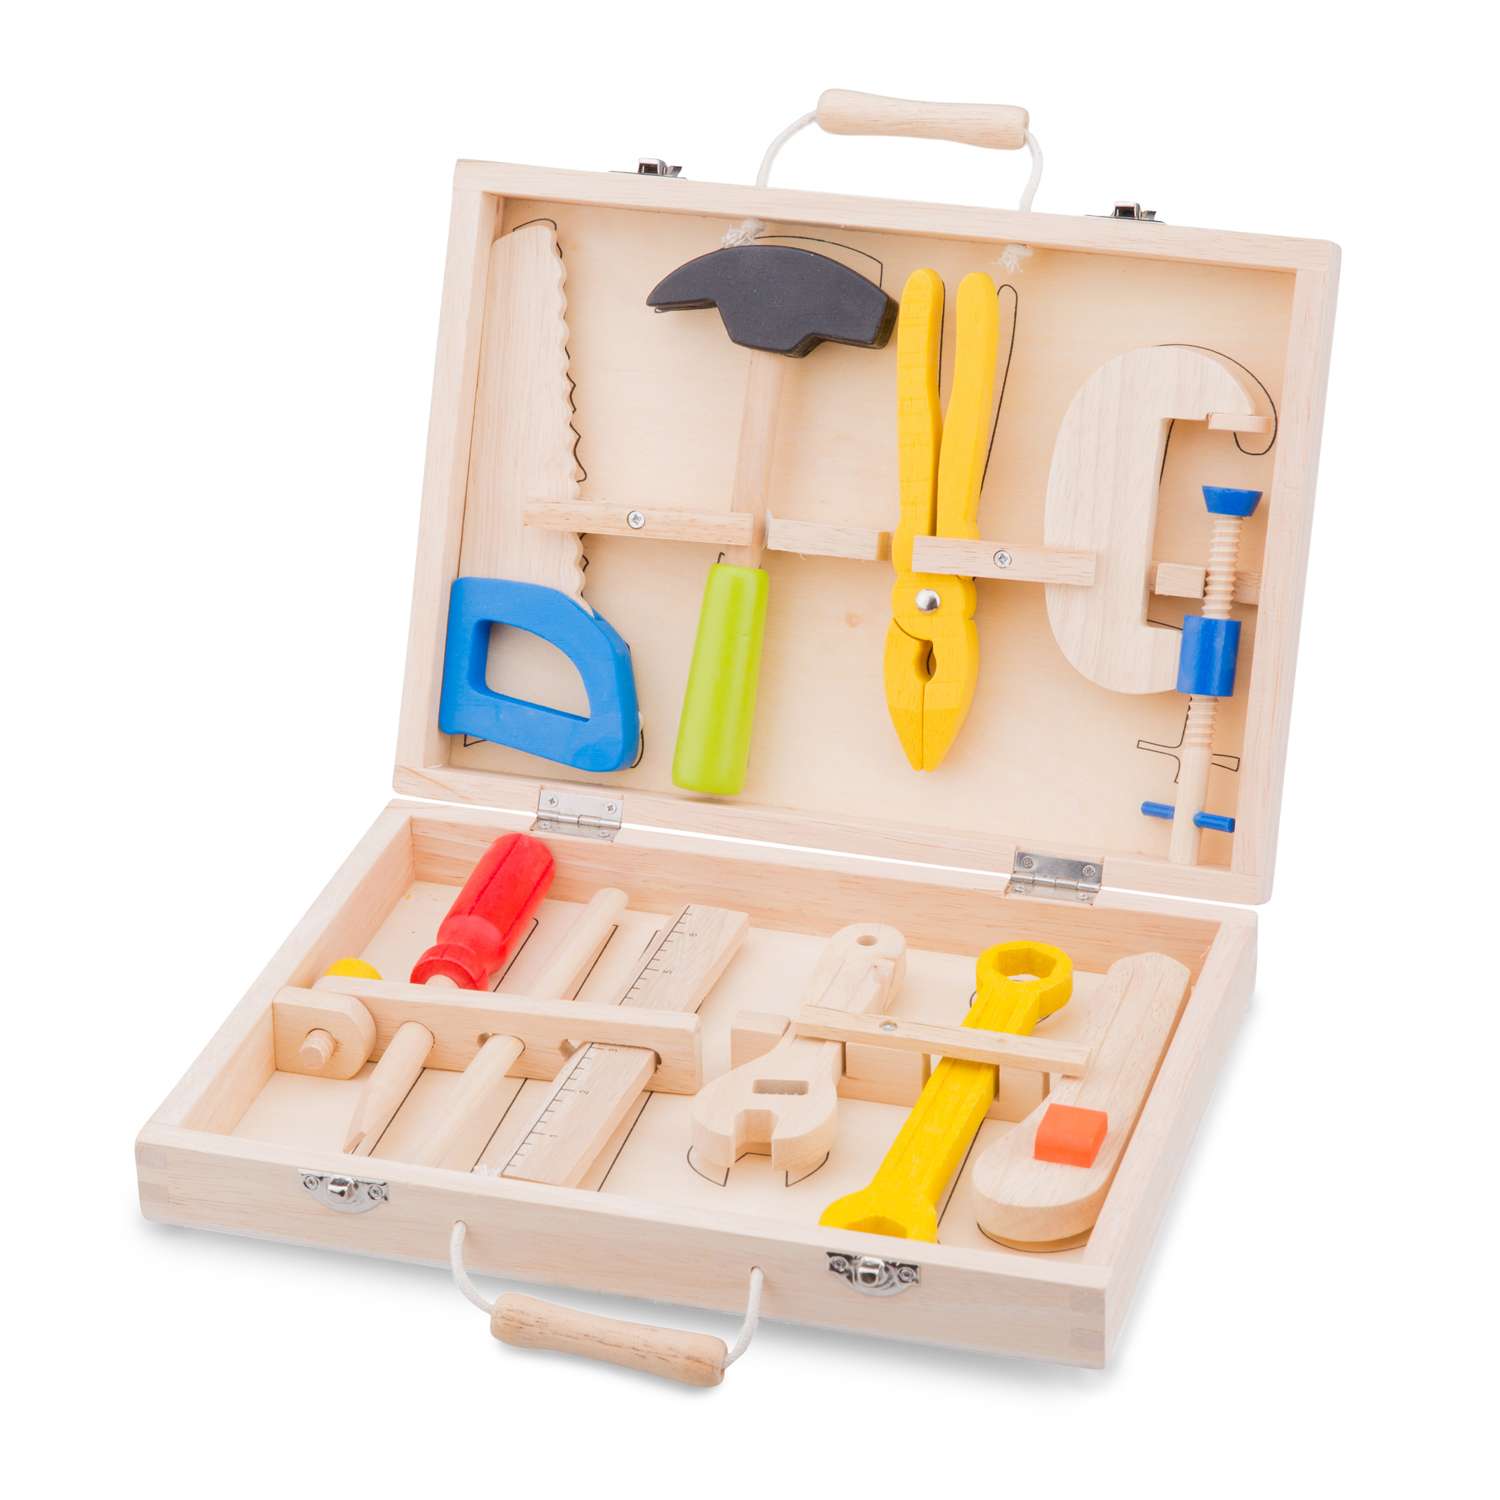 Игровой набор New Classic Toys инструменты 10 предметов 18280 - фото 1